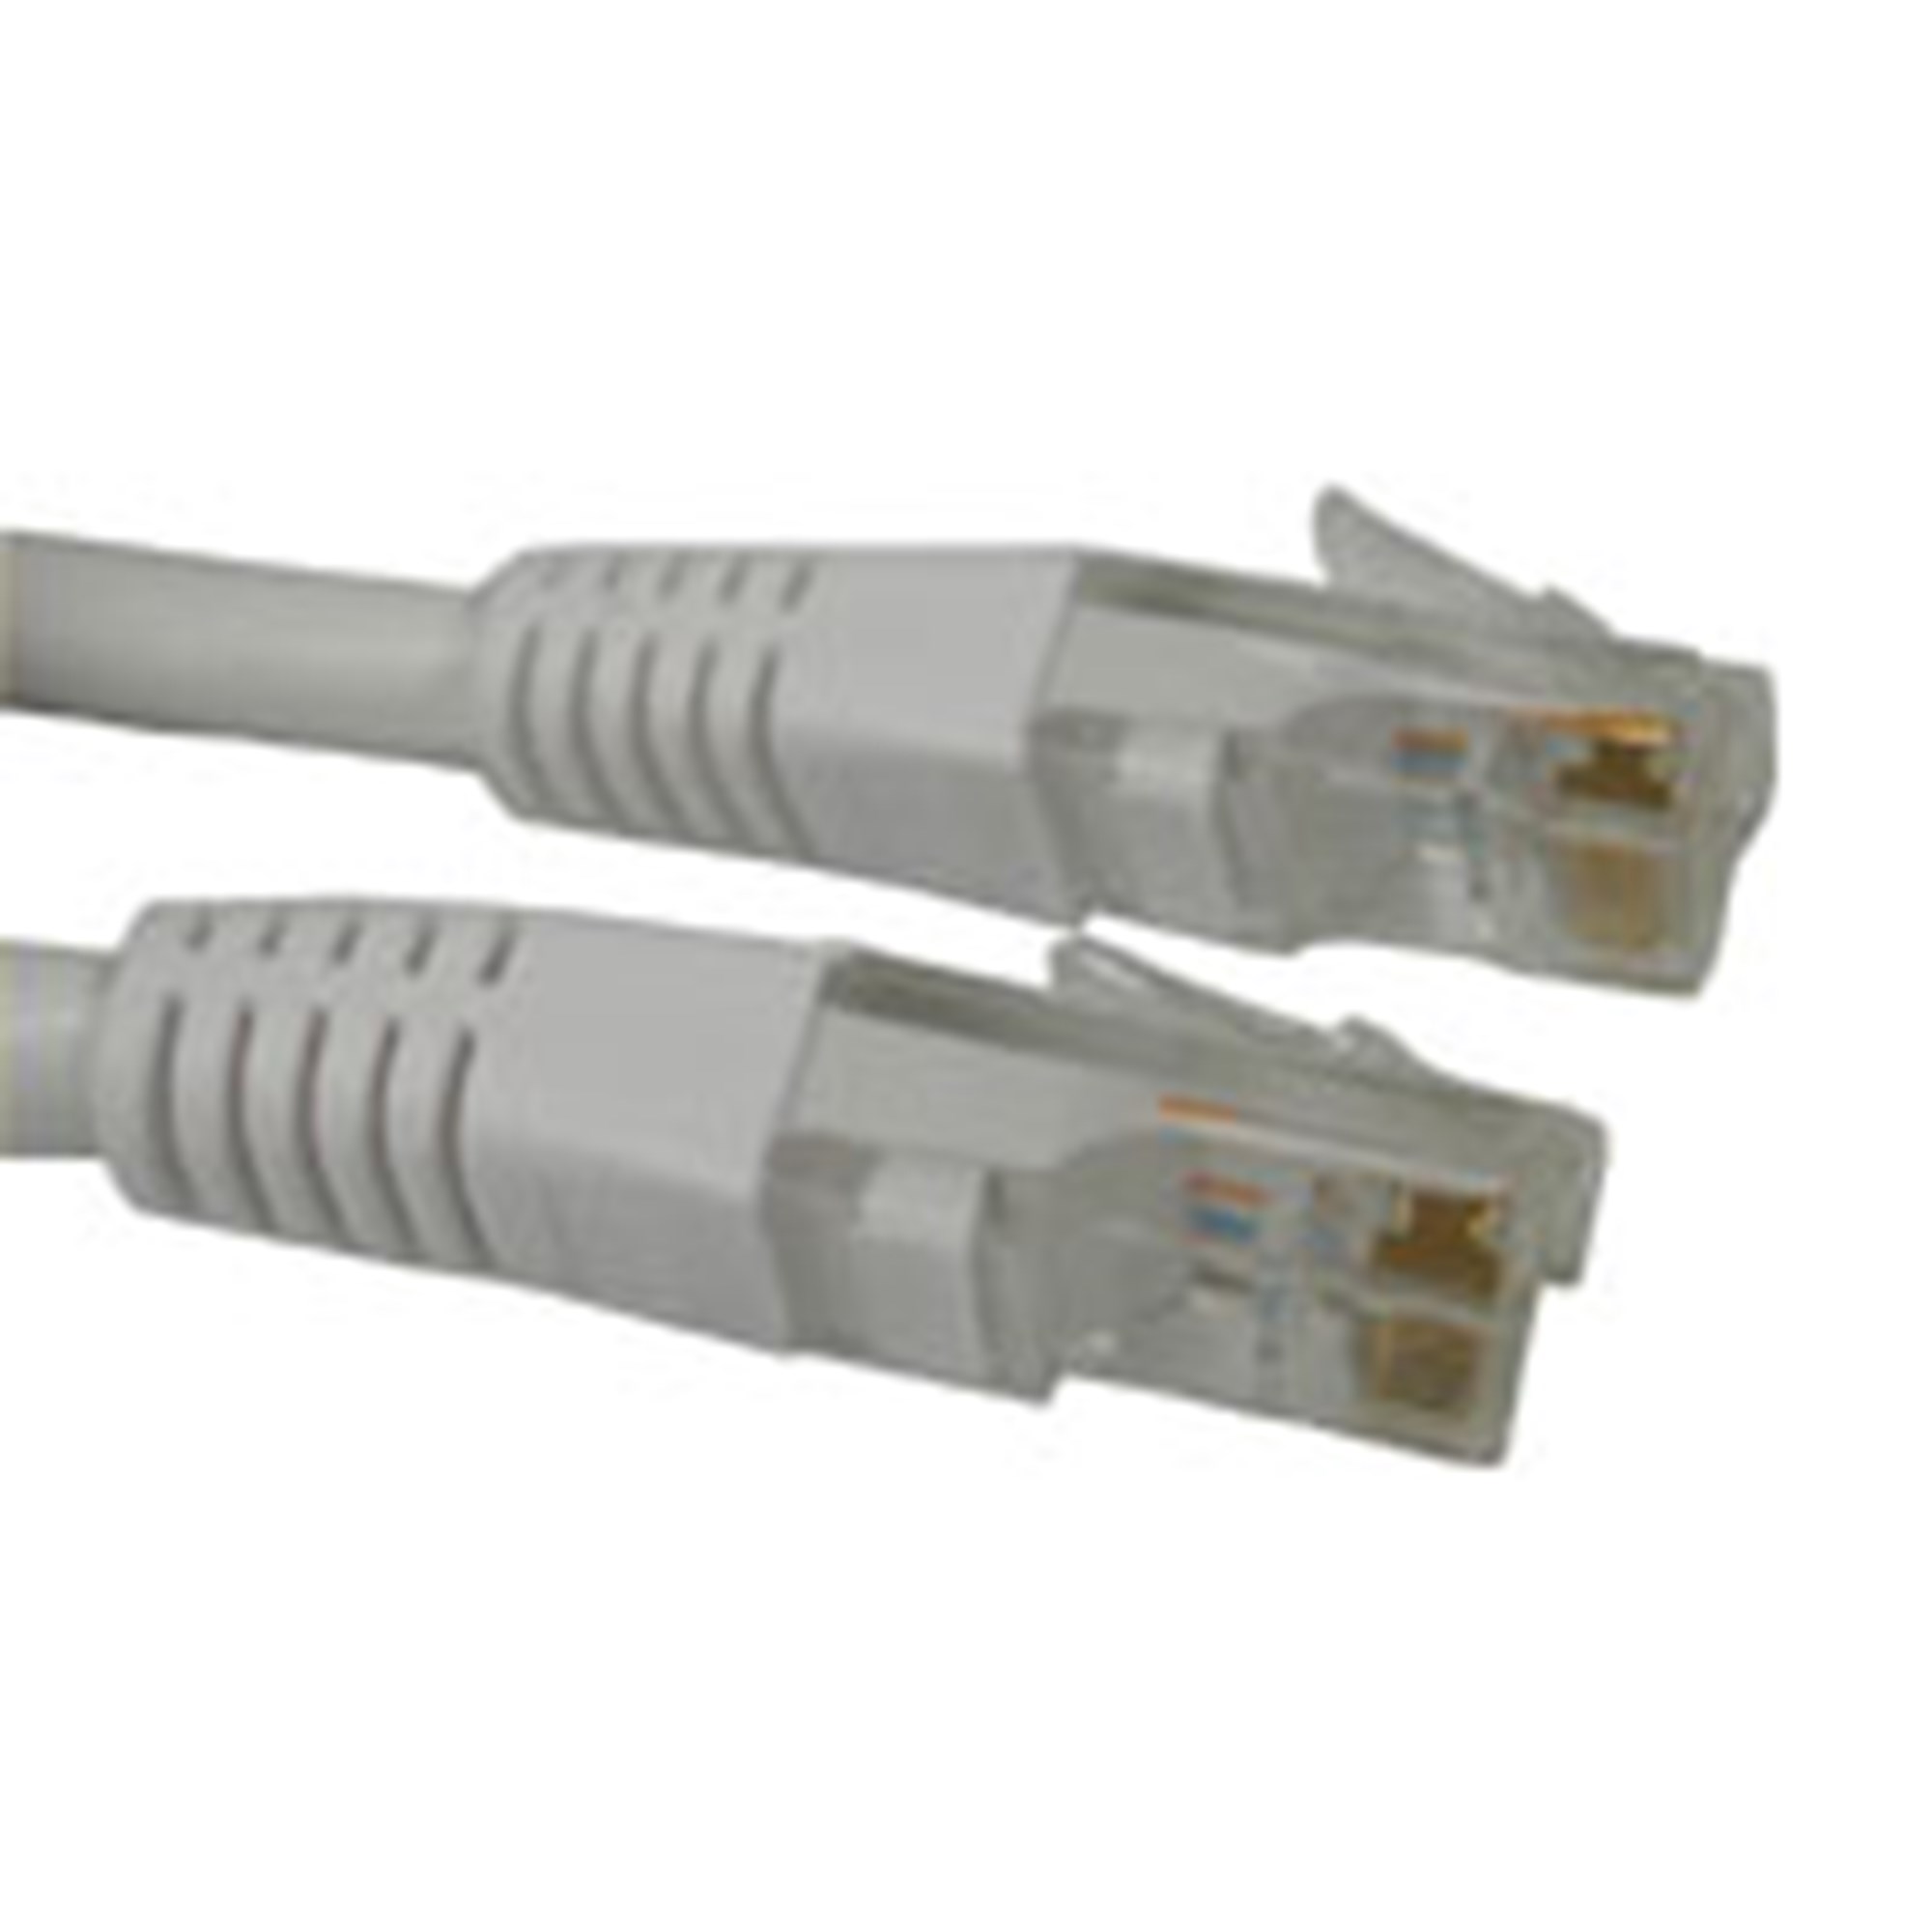 Billede af Network UTP Cable, Cat6, White (20m)